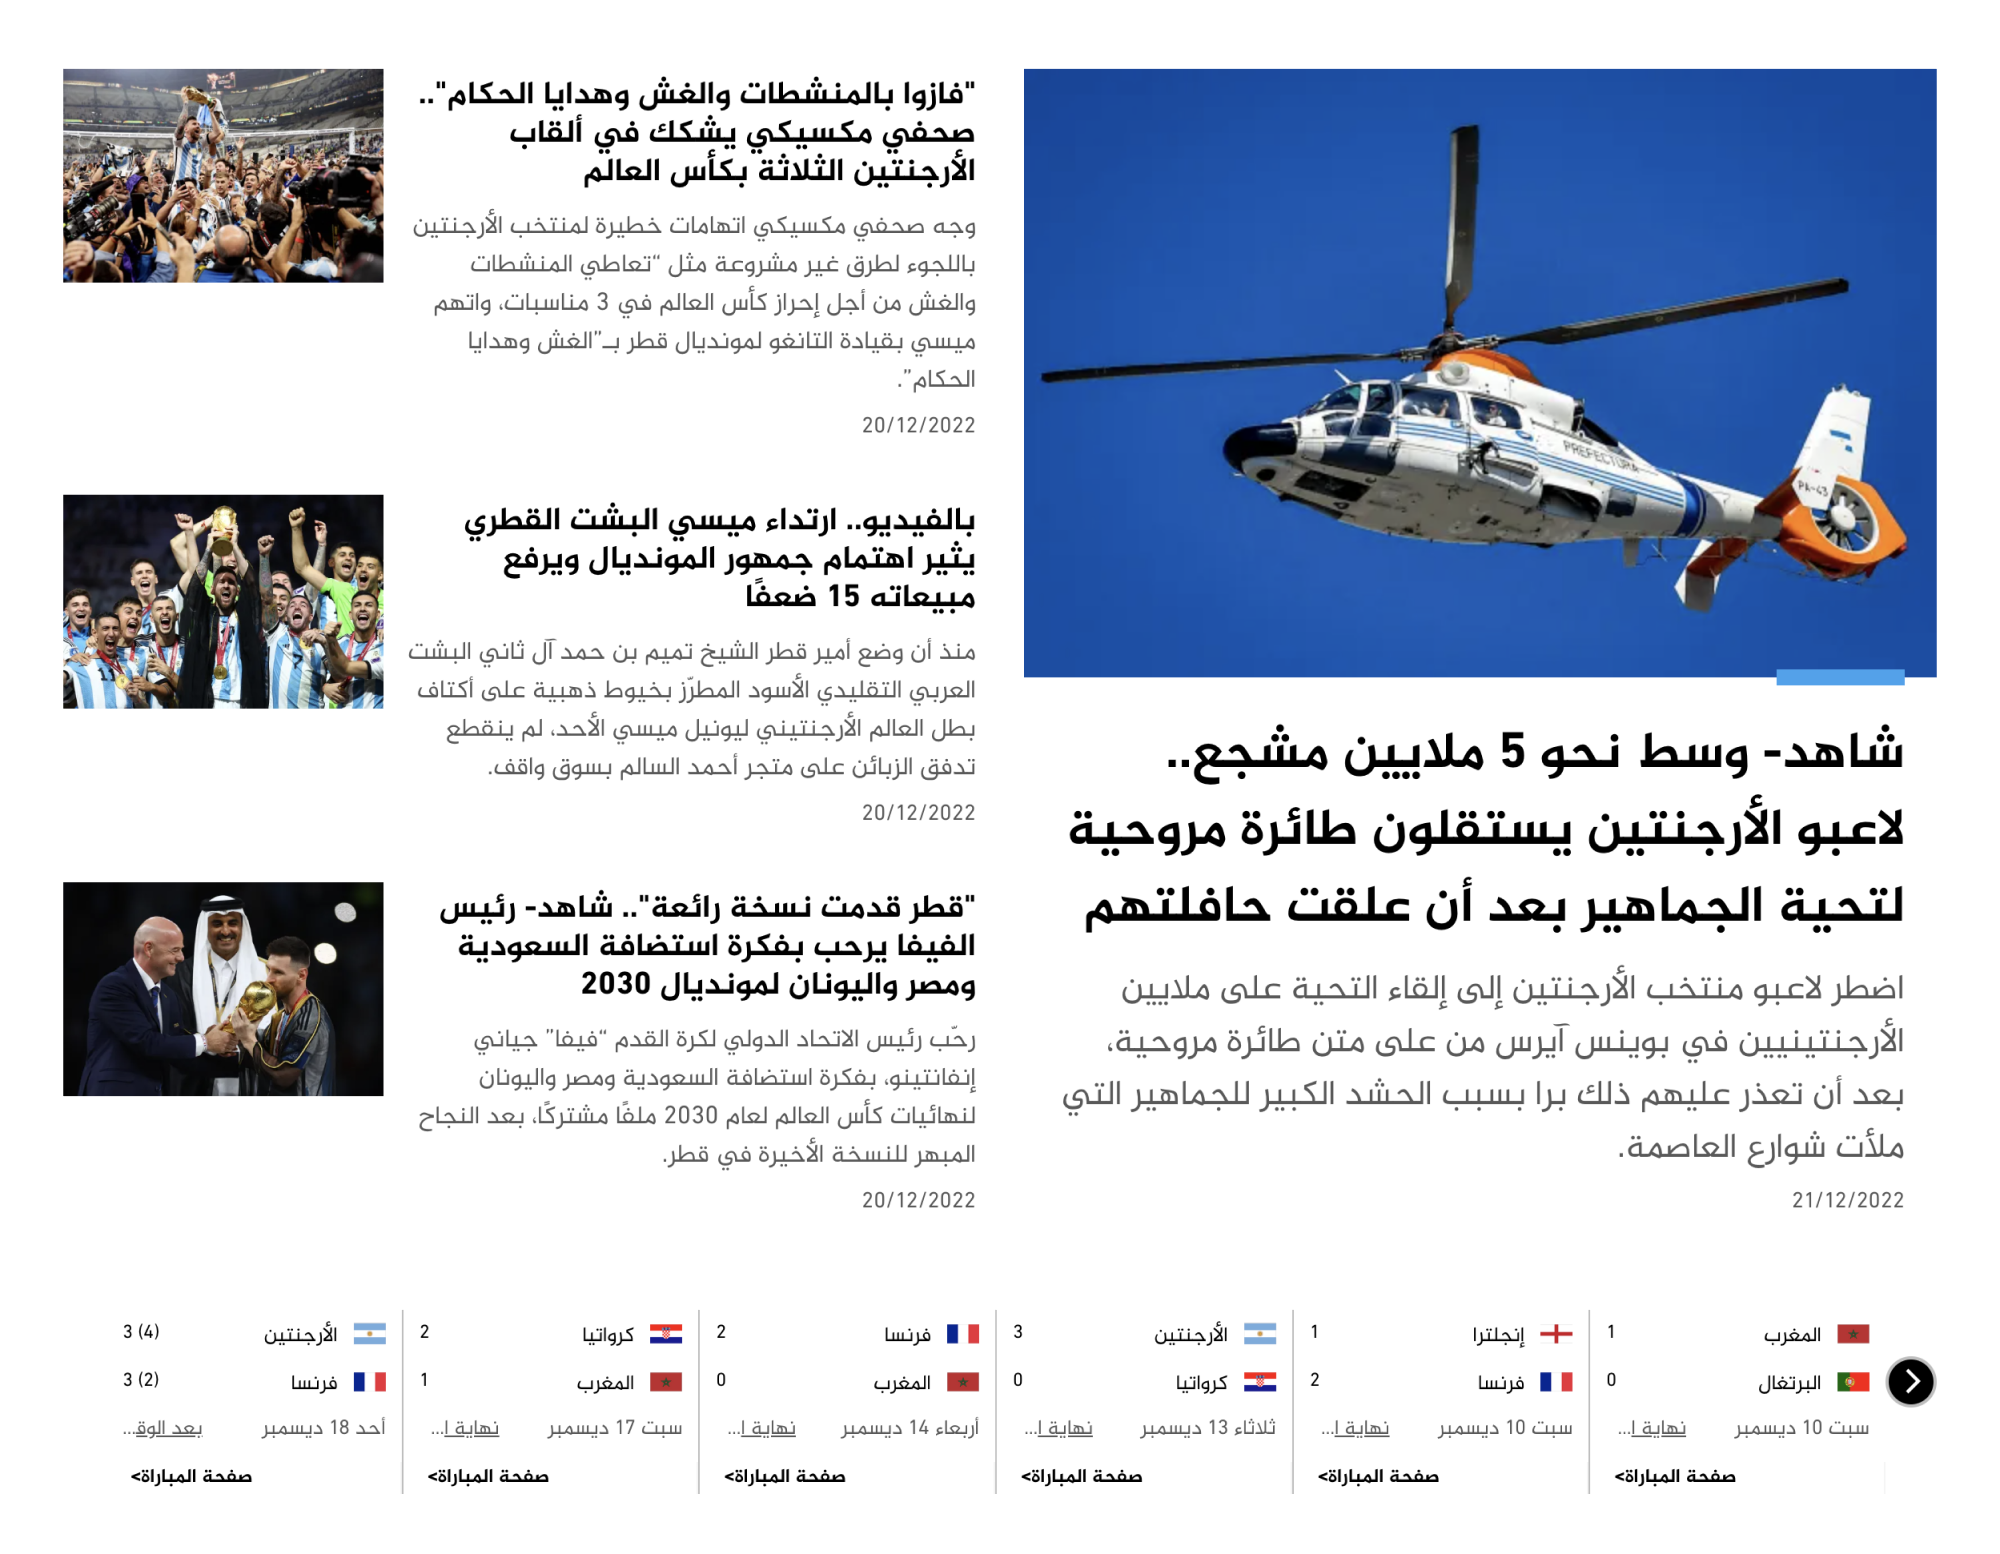 Cейчас на сайте телекомпании особенно много публикаций про чемпионат мира по футболу в Катаре